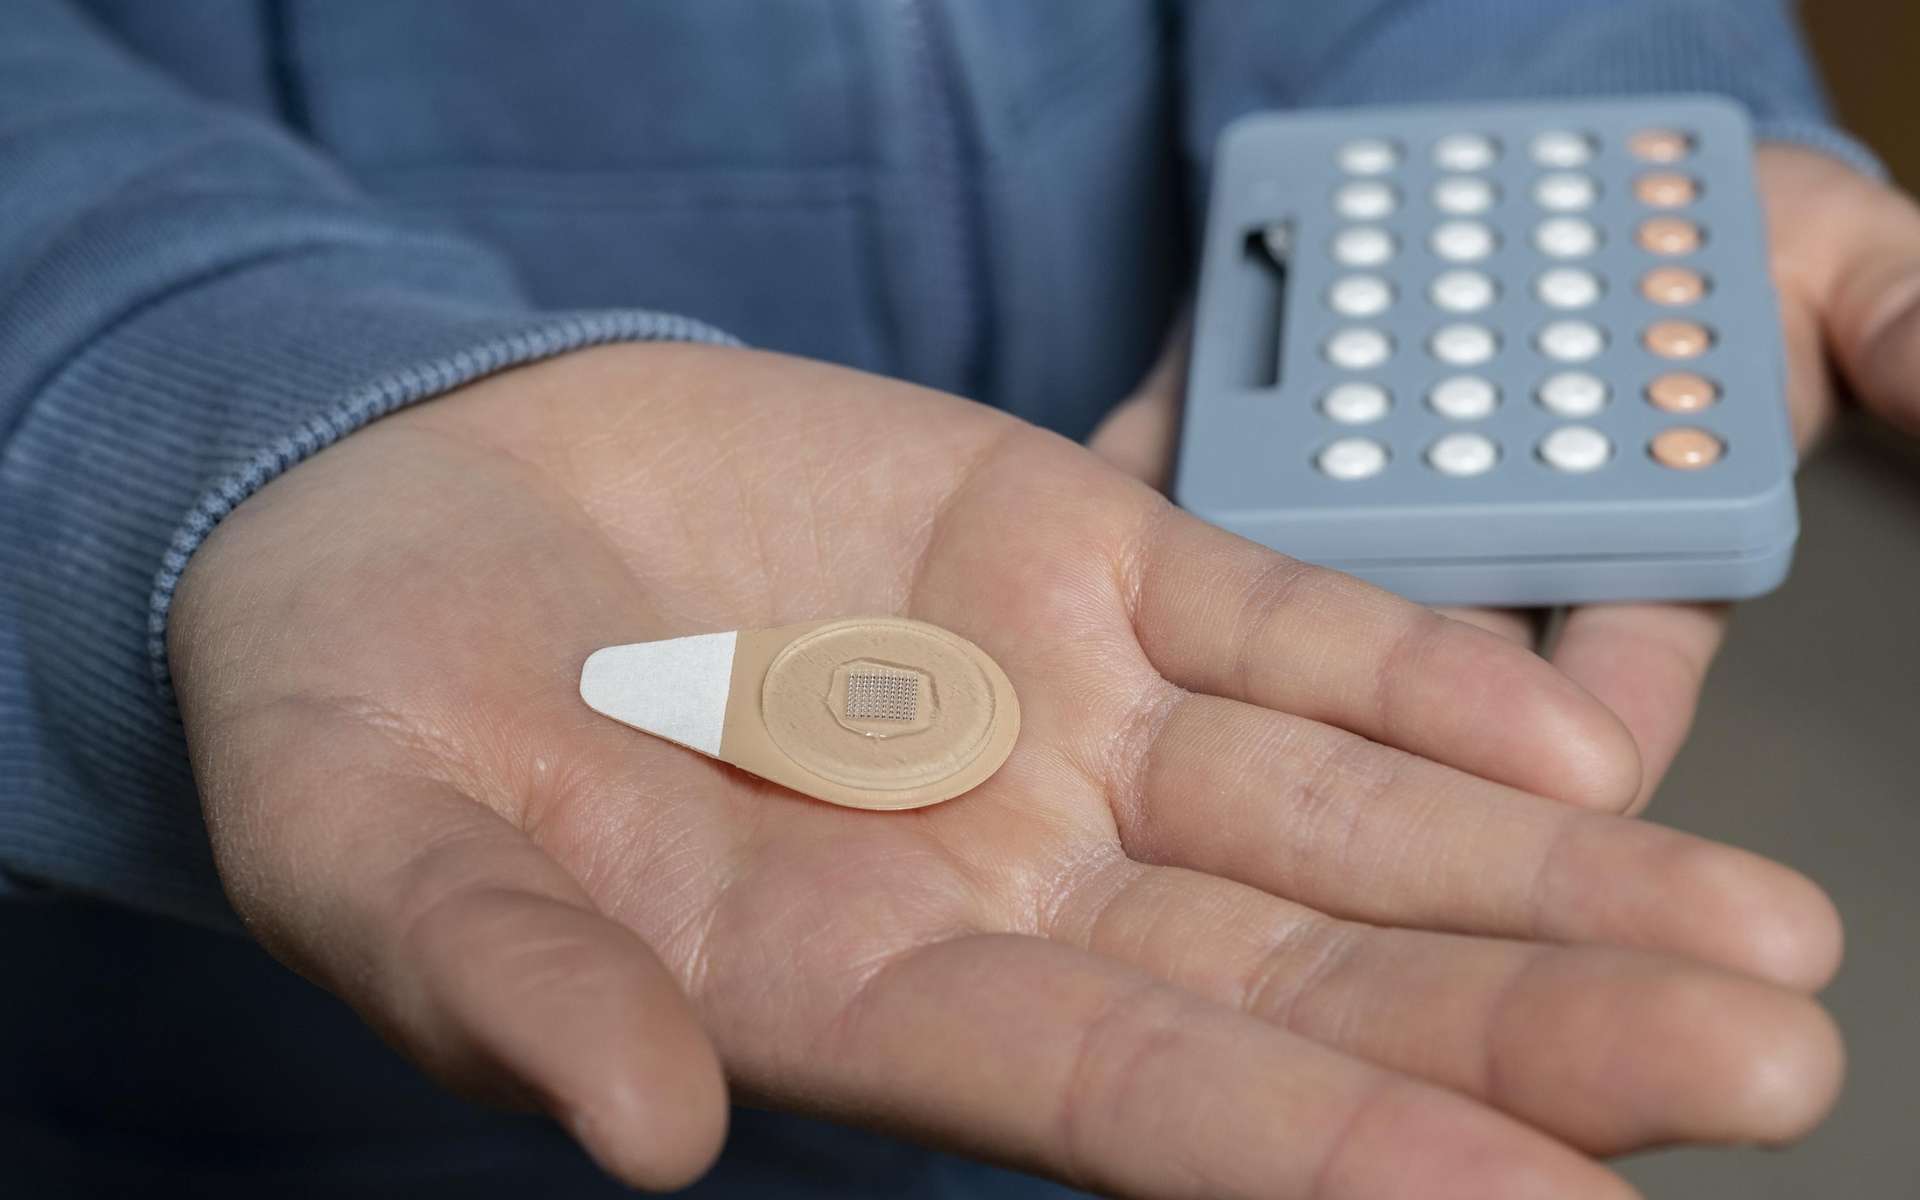 Un patch qui injecte un contraceptif longue durée